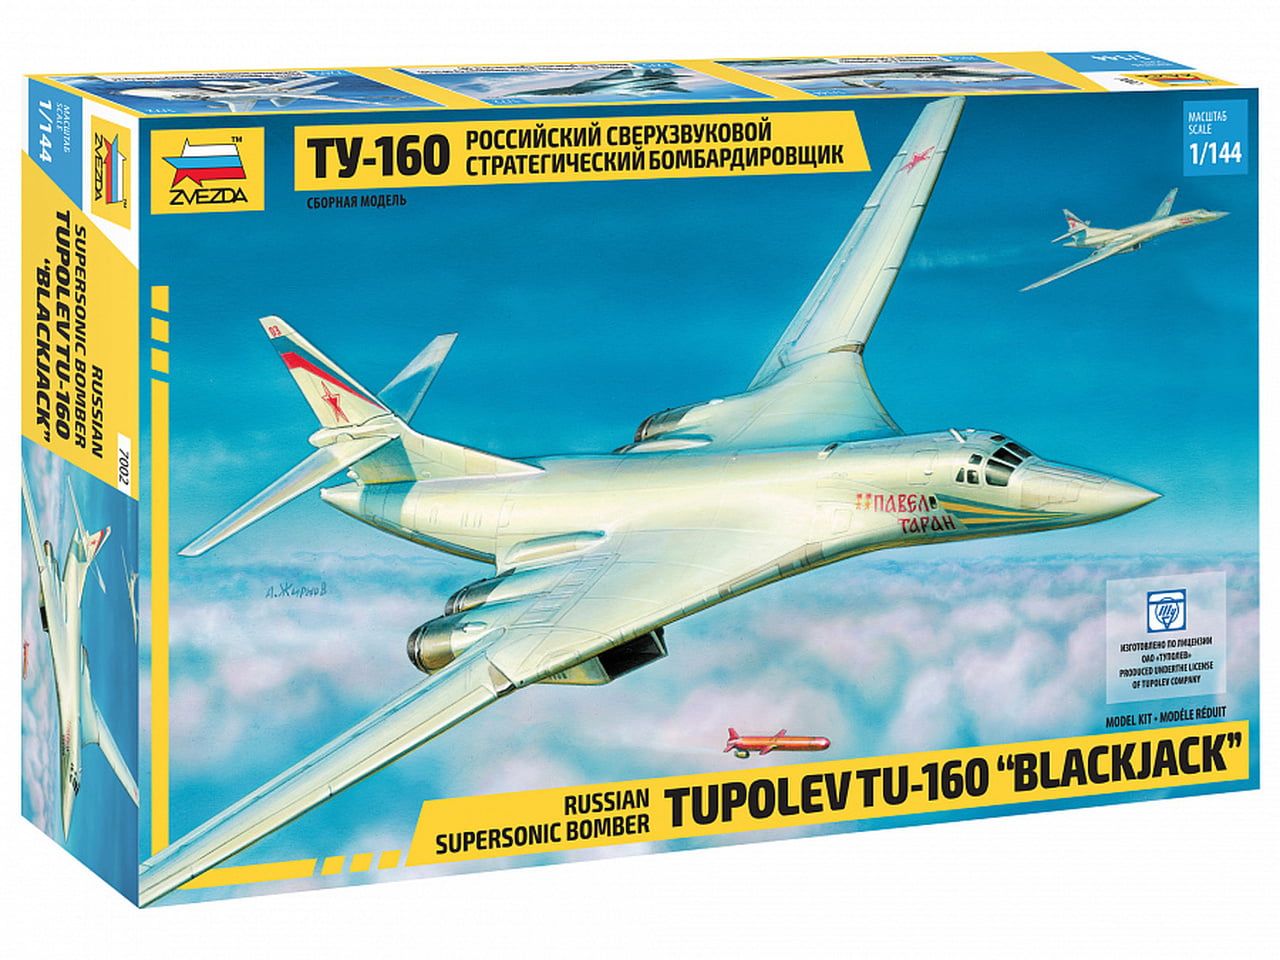 Zvezda Tupolev TU-160 Blackjack Bomber 1:144 Scale Model Kit